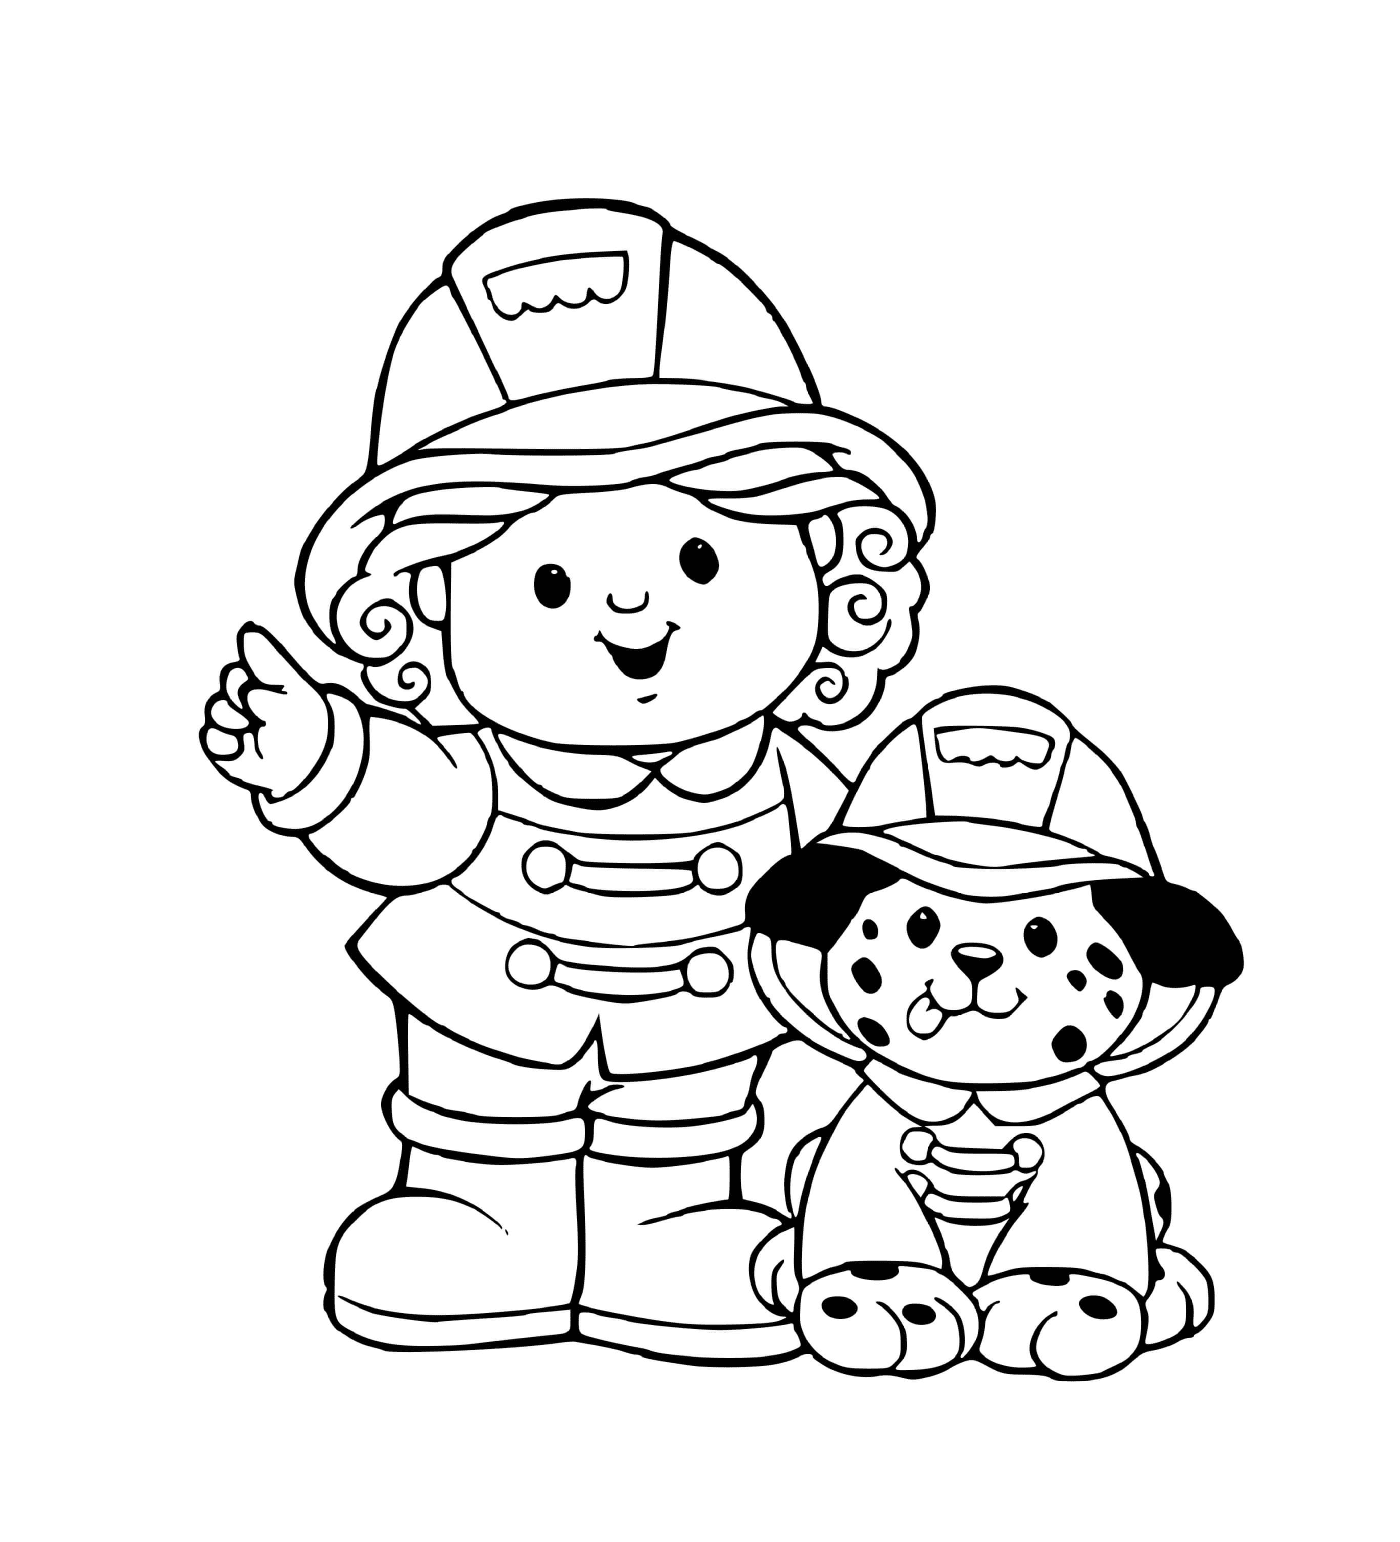  Feuerwehrfrau mit ihrem Hund 